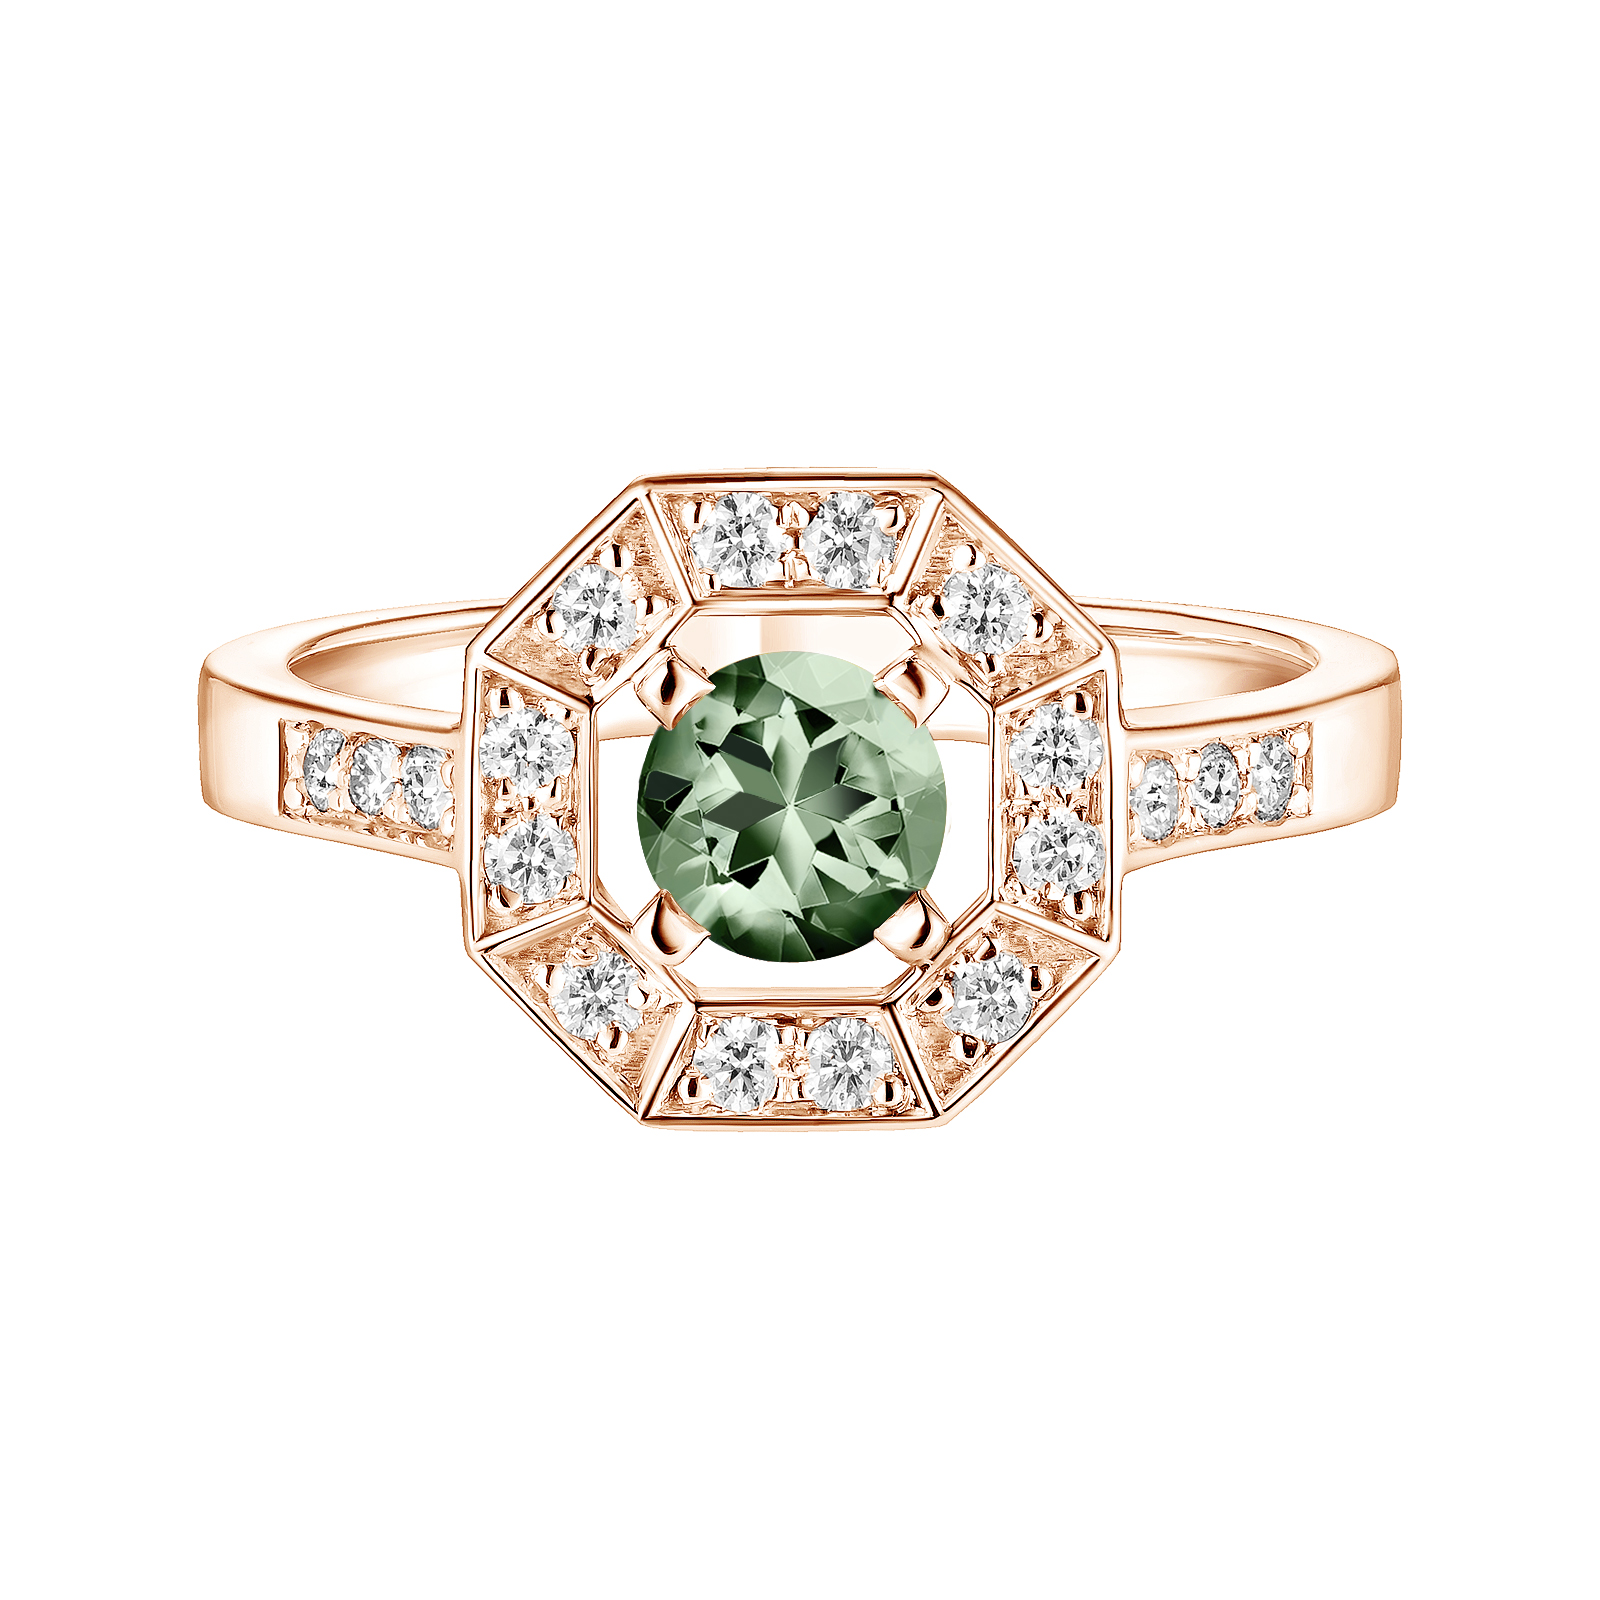 Ring Roségold Grüner Saphir und diamanten Art Déco Rond 5 mm 1